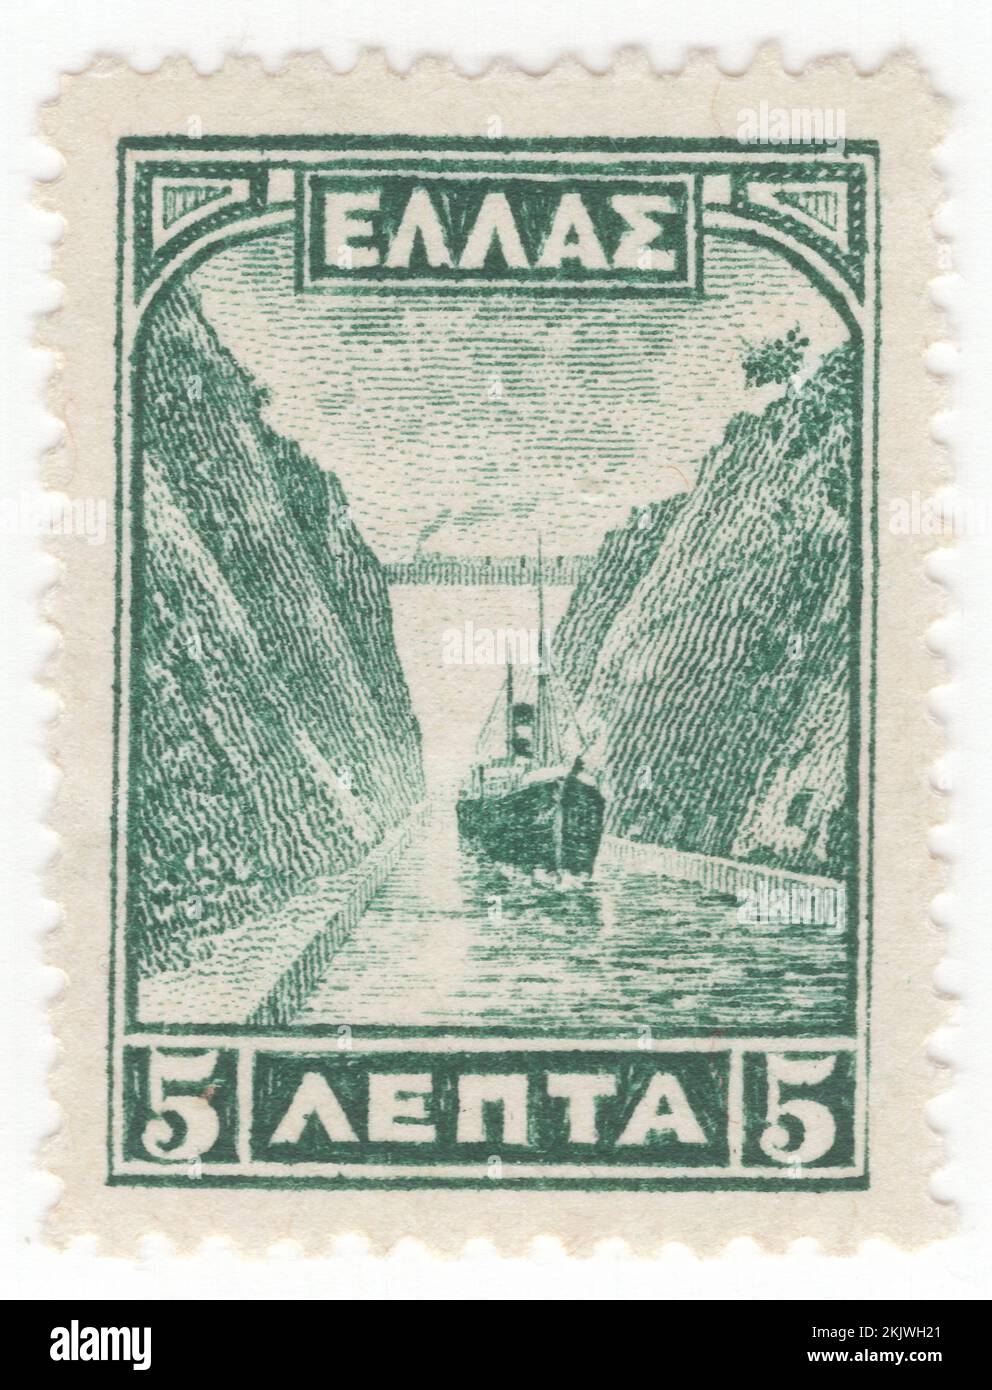 GRIECHENLAND - 1927. April 1: Eine 50-Lepta-violette Briefmarke, die den Kanal von Korinth, einen künstlichen Kanal in Griechenland, darstellt, der den Golf von Korinth im Ionischen Meer mit dem Saronischen Golf in der Ägäis verbindet. Er führt durch den engen Isthmus von Korinth und trennt den Peloponnes vom griechischen Festland, wodurch die Halbinsel zu einer Insel wird. Der Kanal wurde auf Meereshöhe durch den Isthmus gegraben und hat keine Schleusen. Sie ist 6,4 Kilometer (4 Meilen) lang und nur 24,6 Meter (80,7 Fuß) breit auf Meereshöhe, was sie für viele moderne Schiffe unpassierbar macht Stockfoto